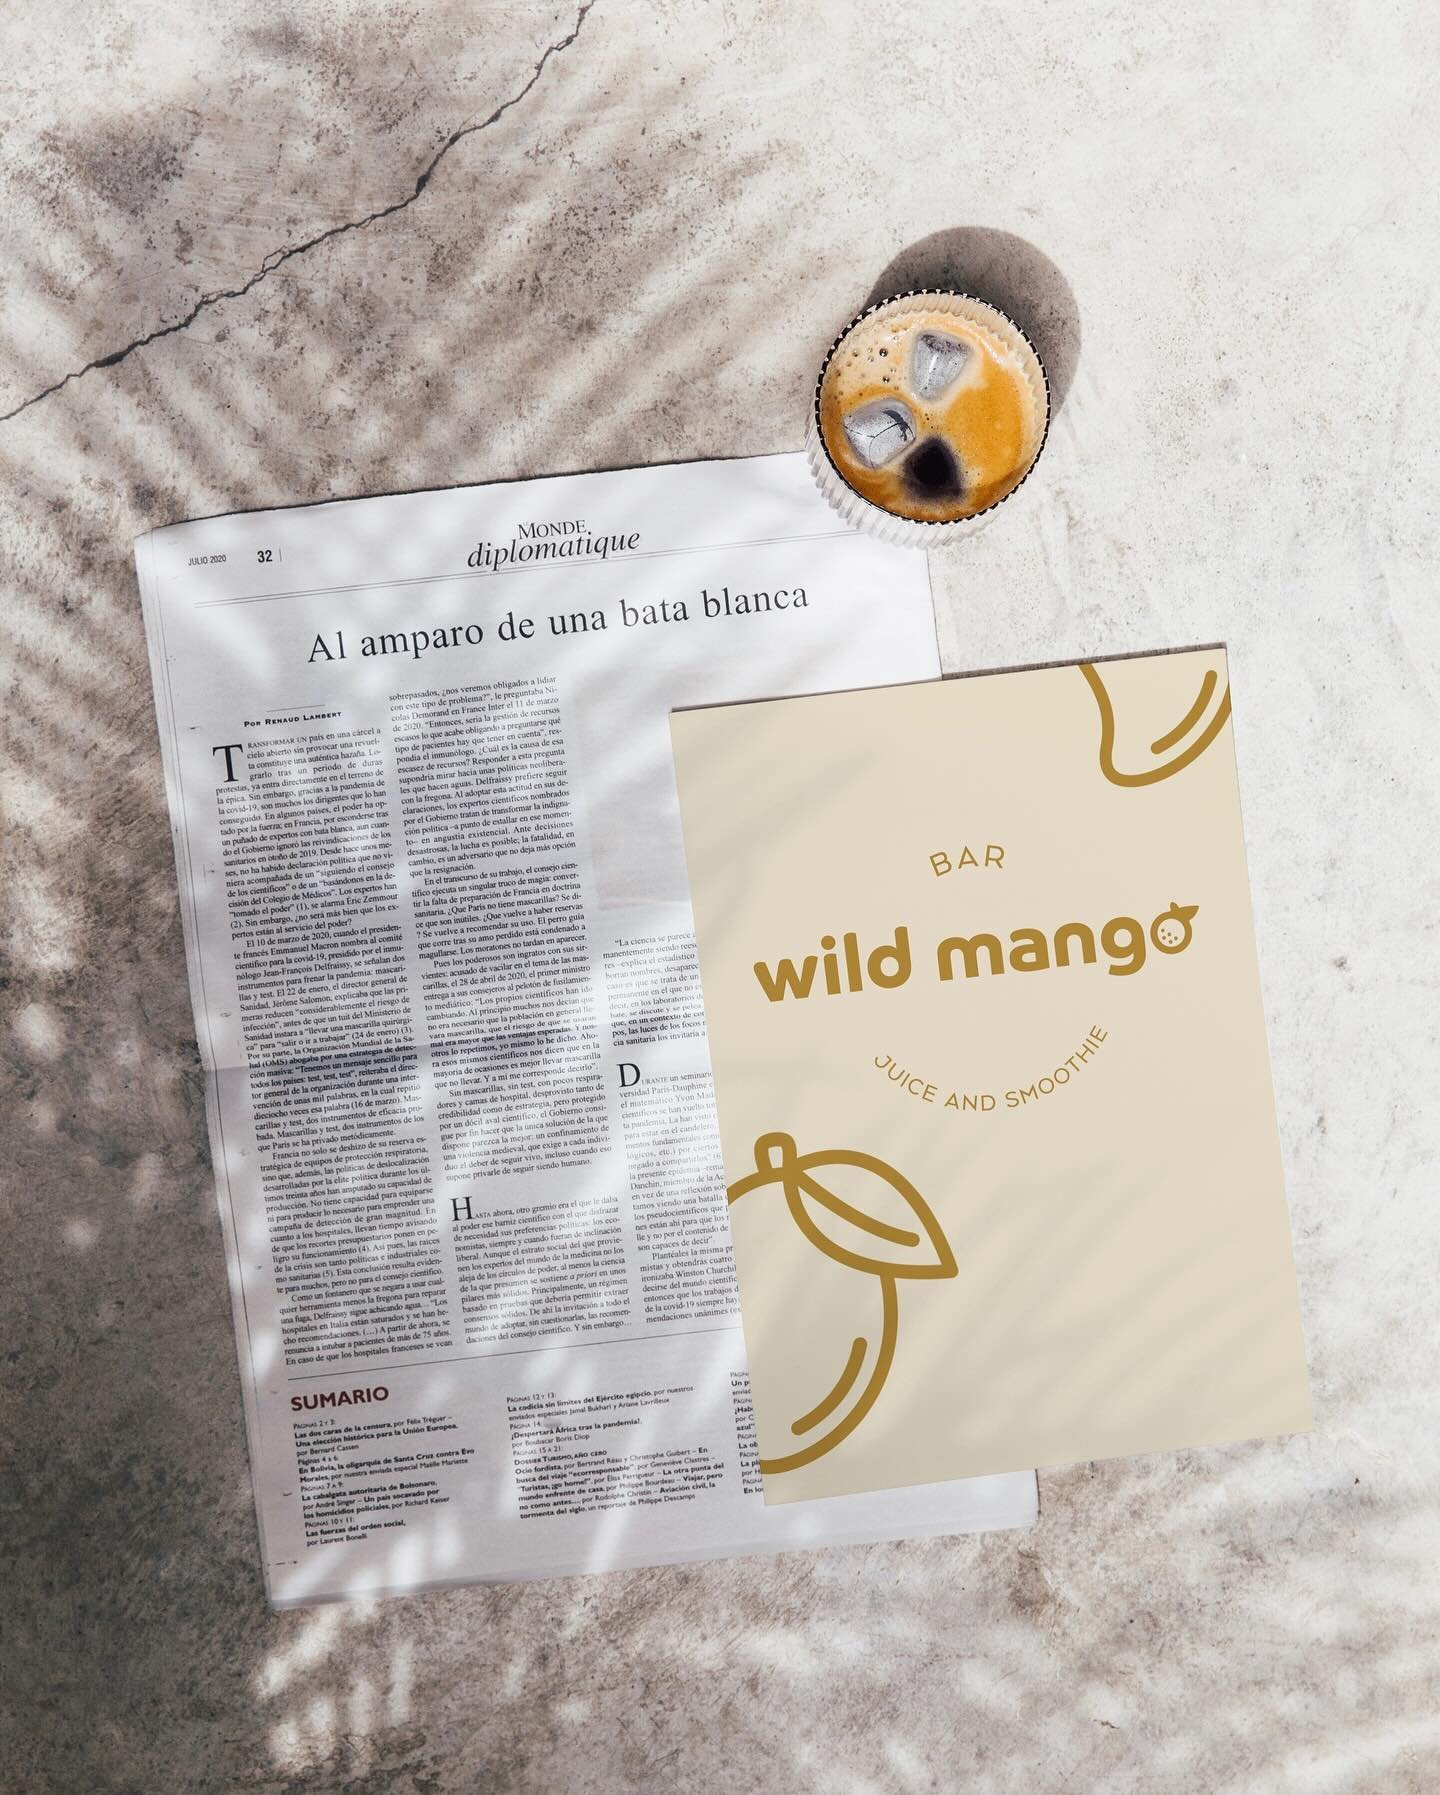 wild mango | a fresh juice and smoothie bar. 🥭
brand design and photography. ☼

________

check out my website |  link in bio.
follow for more &rarr; @designmatzer 
⠀
________

#sarahmatzerdesign #werbeagentur #branddesign #designstudio @briefhaus #